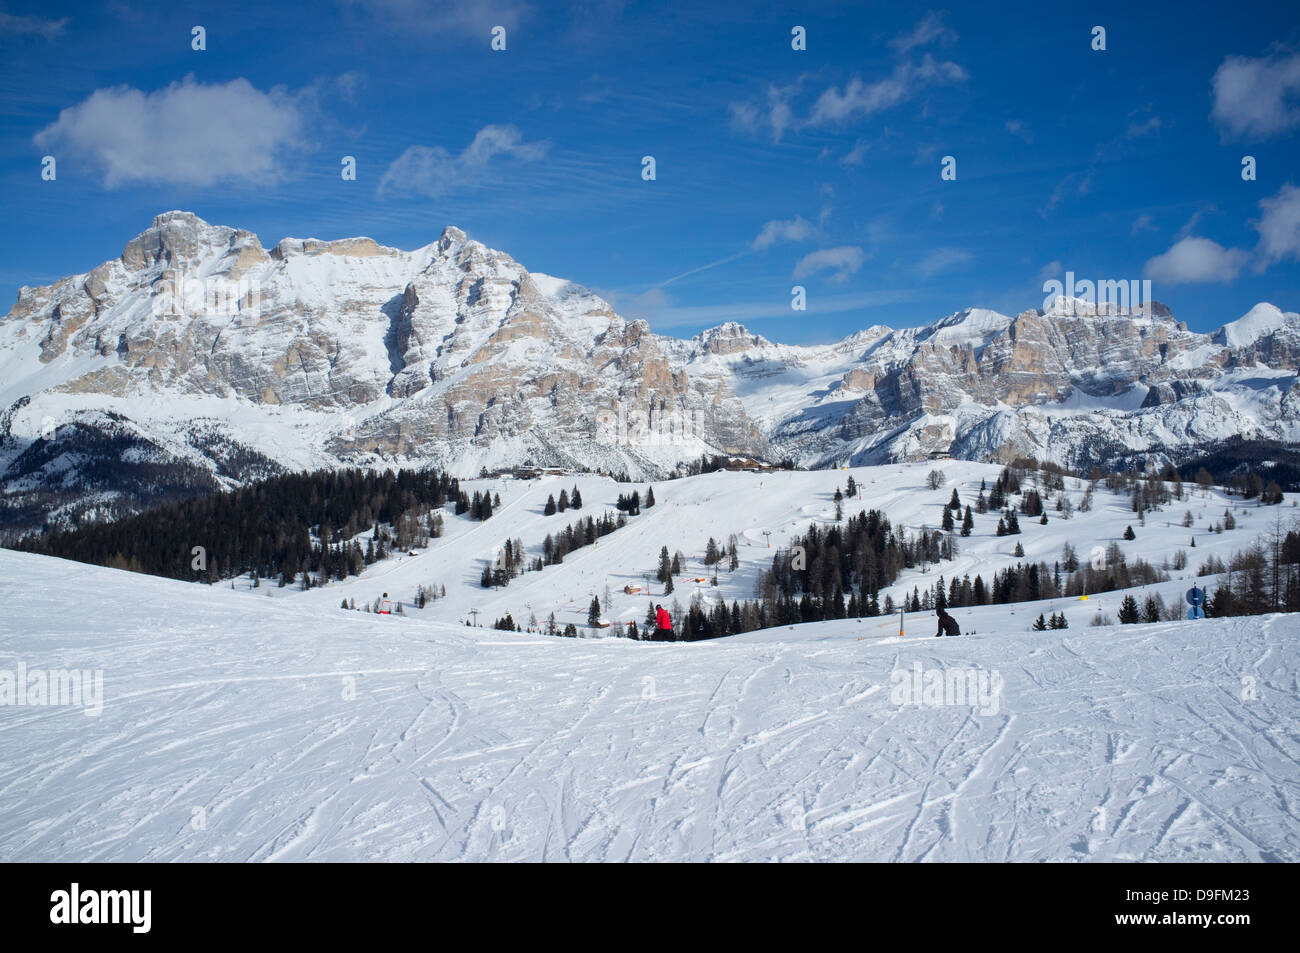 La station de ski Alta Badia et Contourines avec montagnes Lavarella derrière, Corvara, Dolomites, le Tyrol du Sud, Italie Banque D'Images